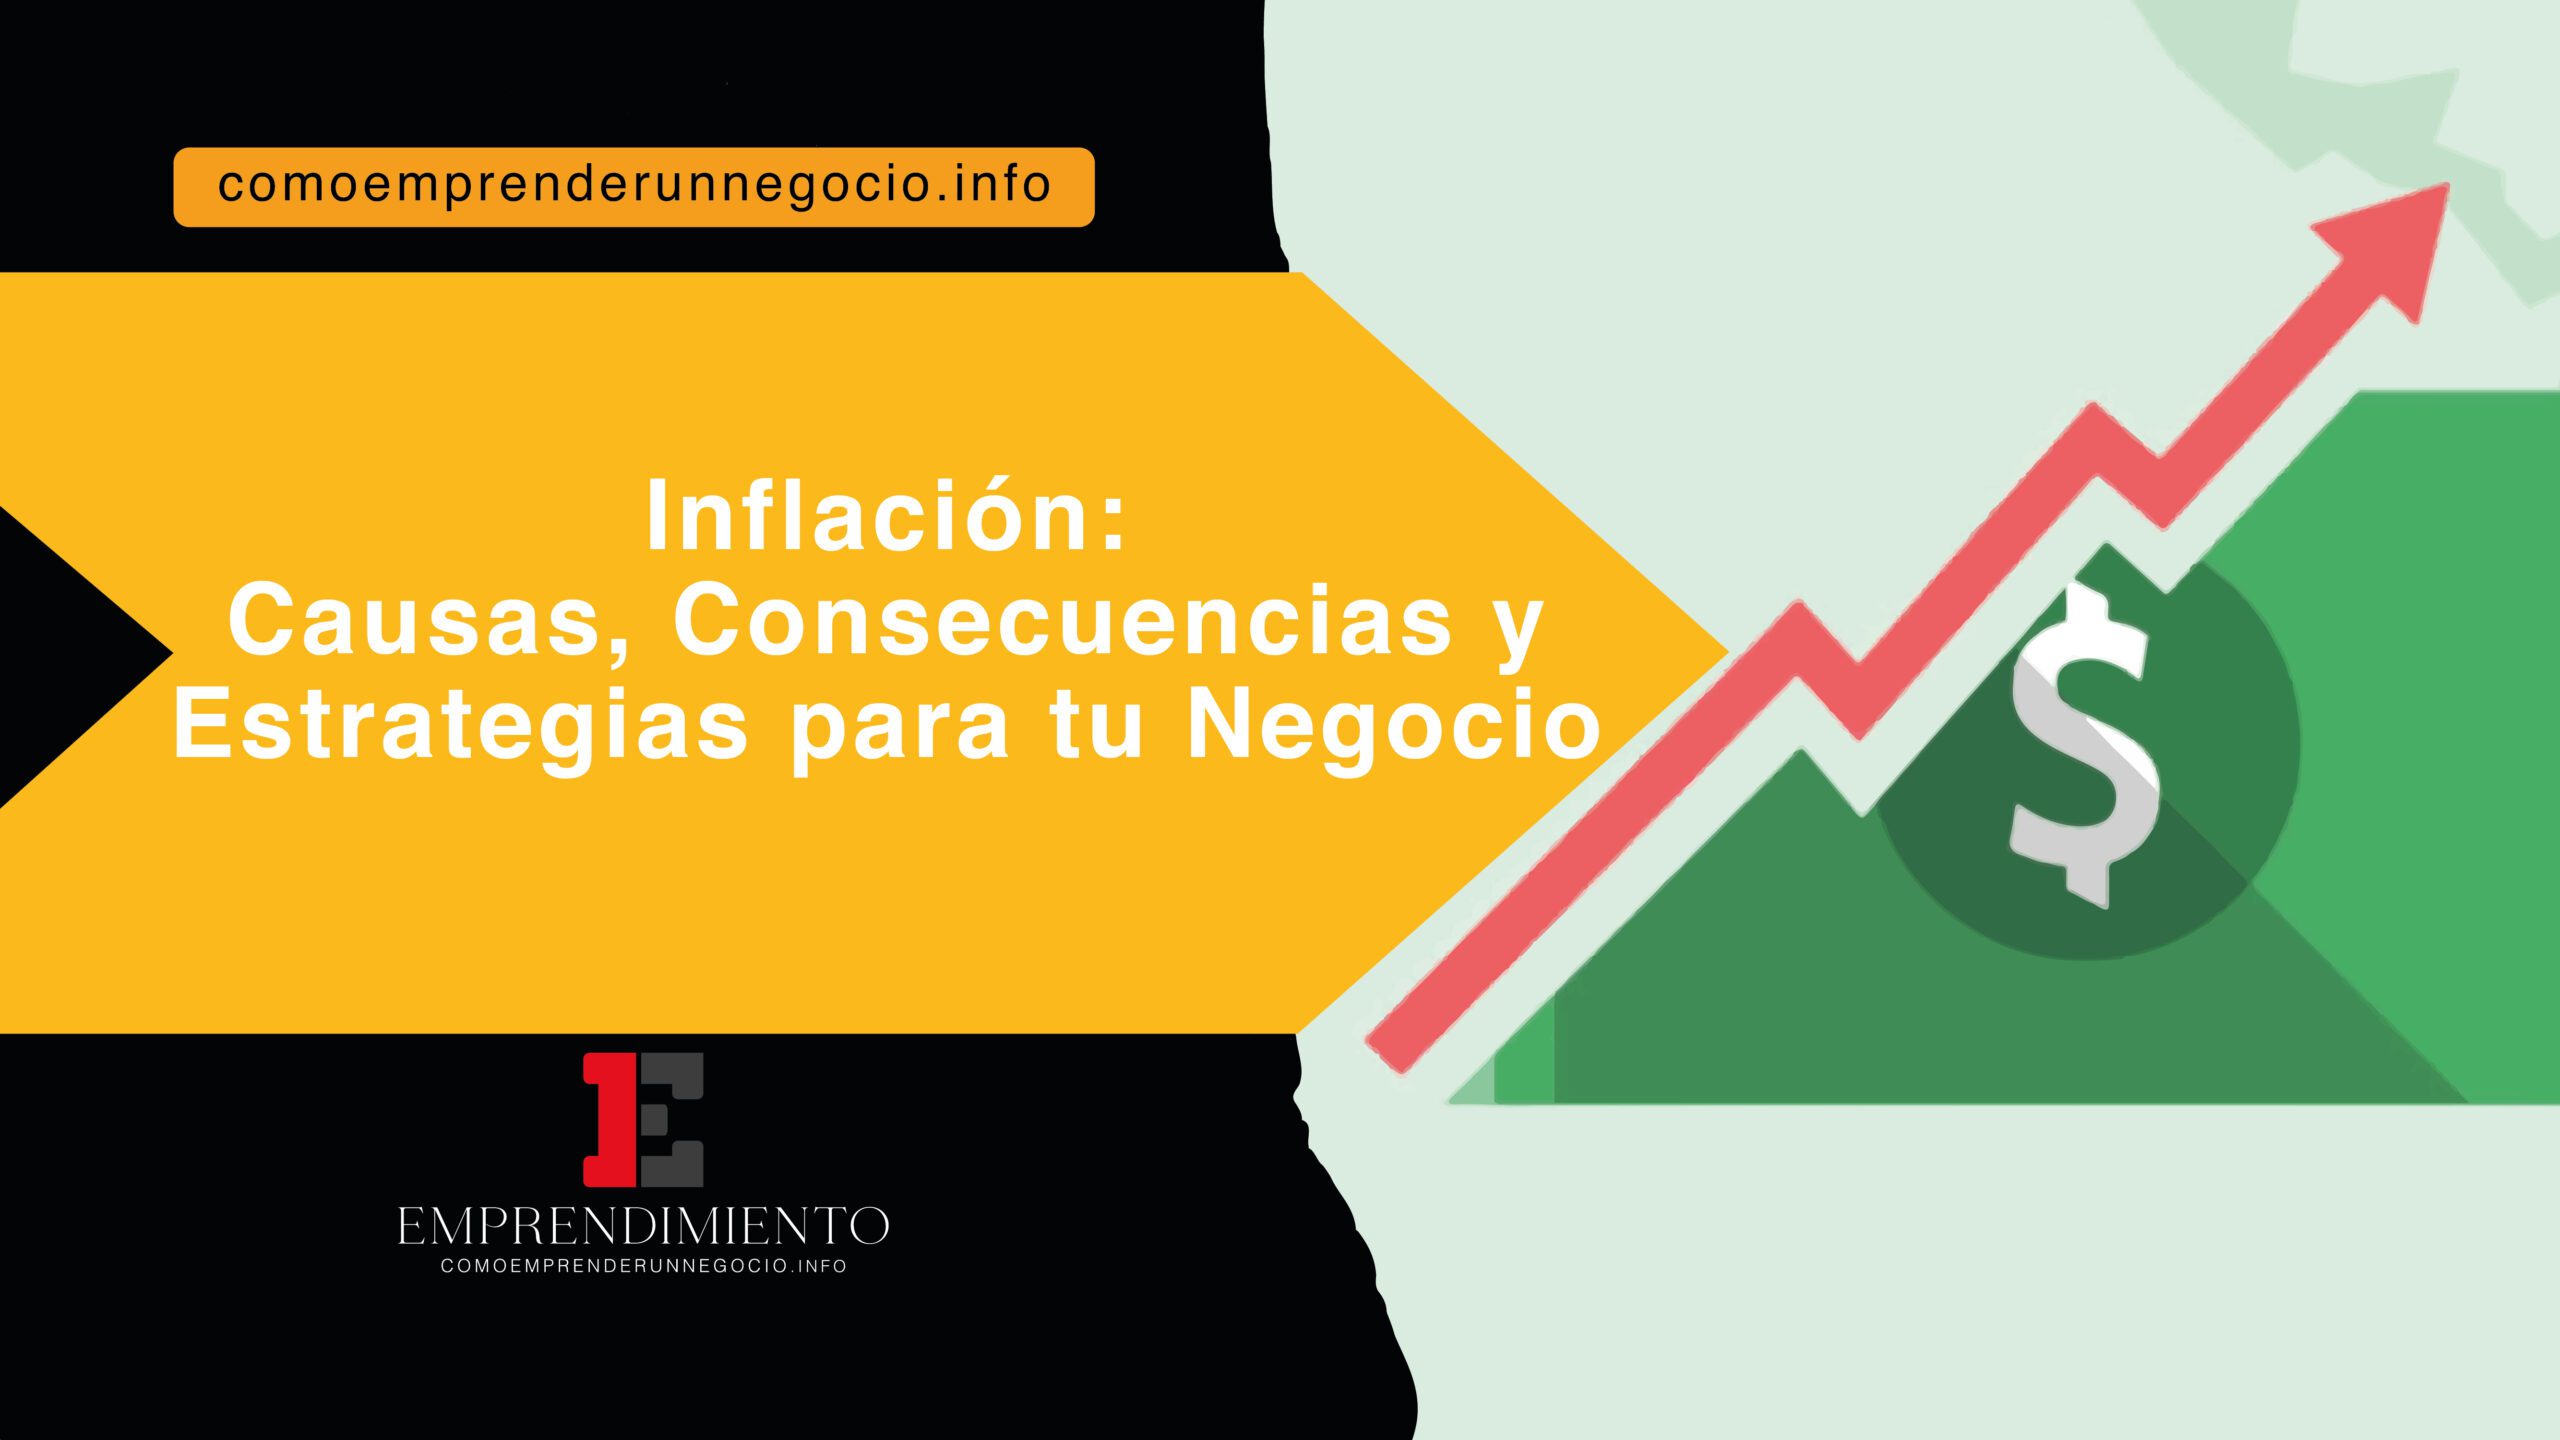 Inflación: Causas, Consecuencias y Estrategias para tu Negocio